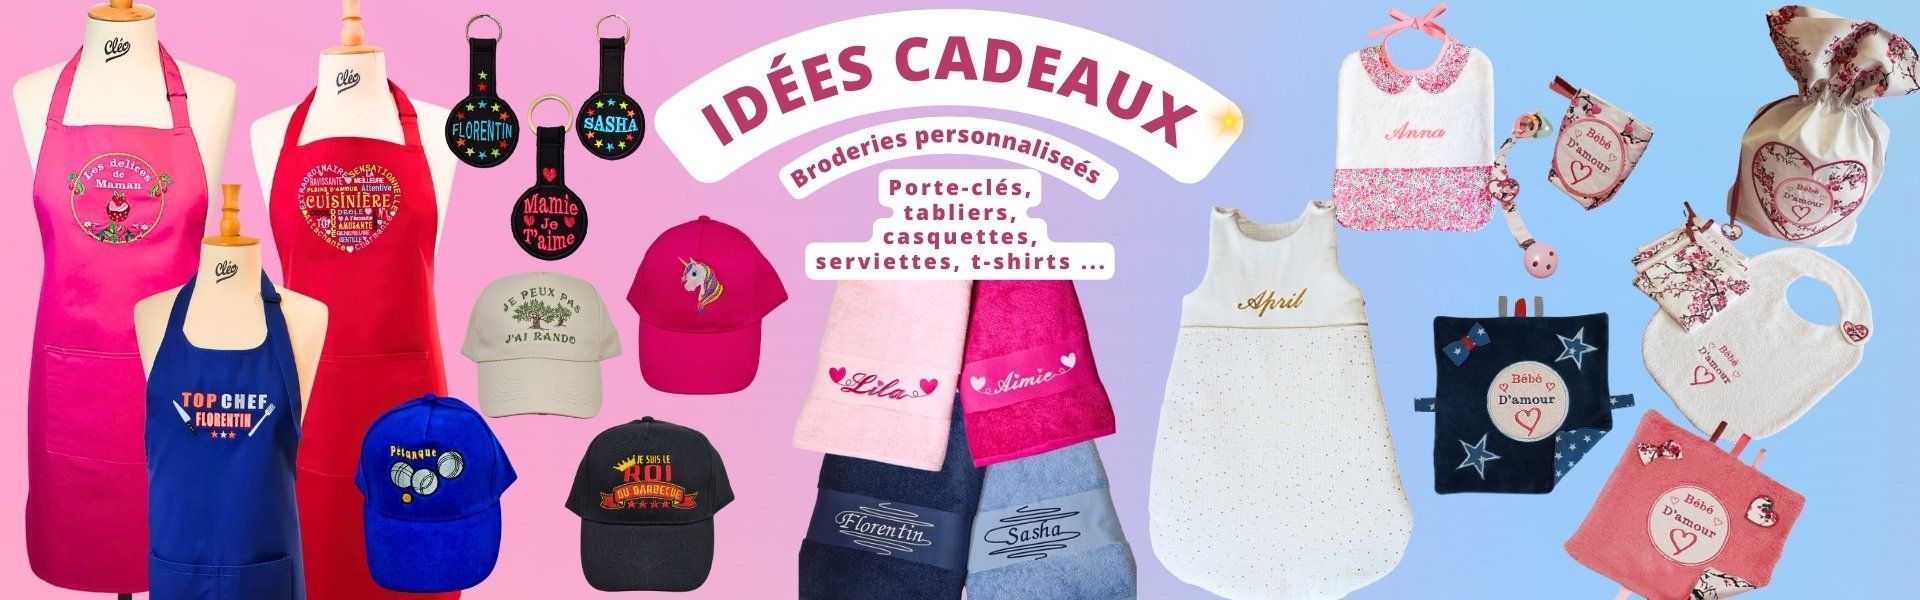 liste_des_cadeaux_en_image.jpg